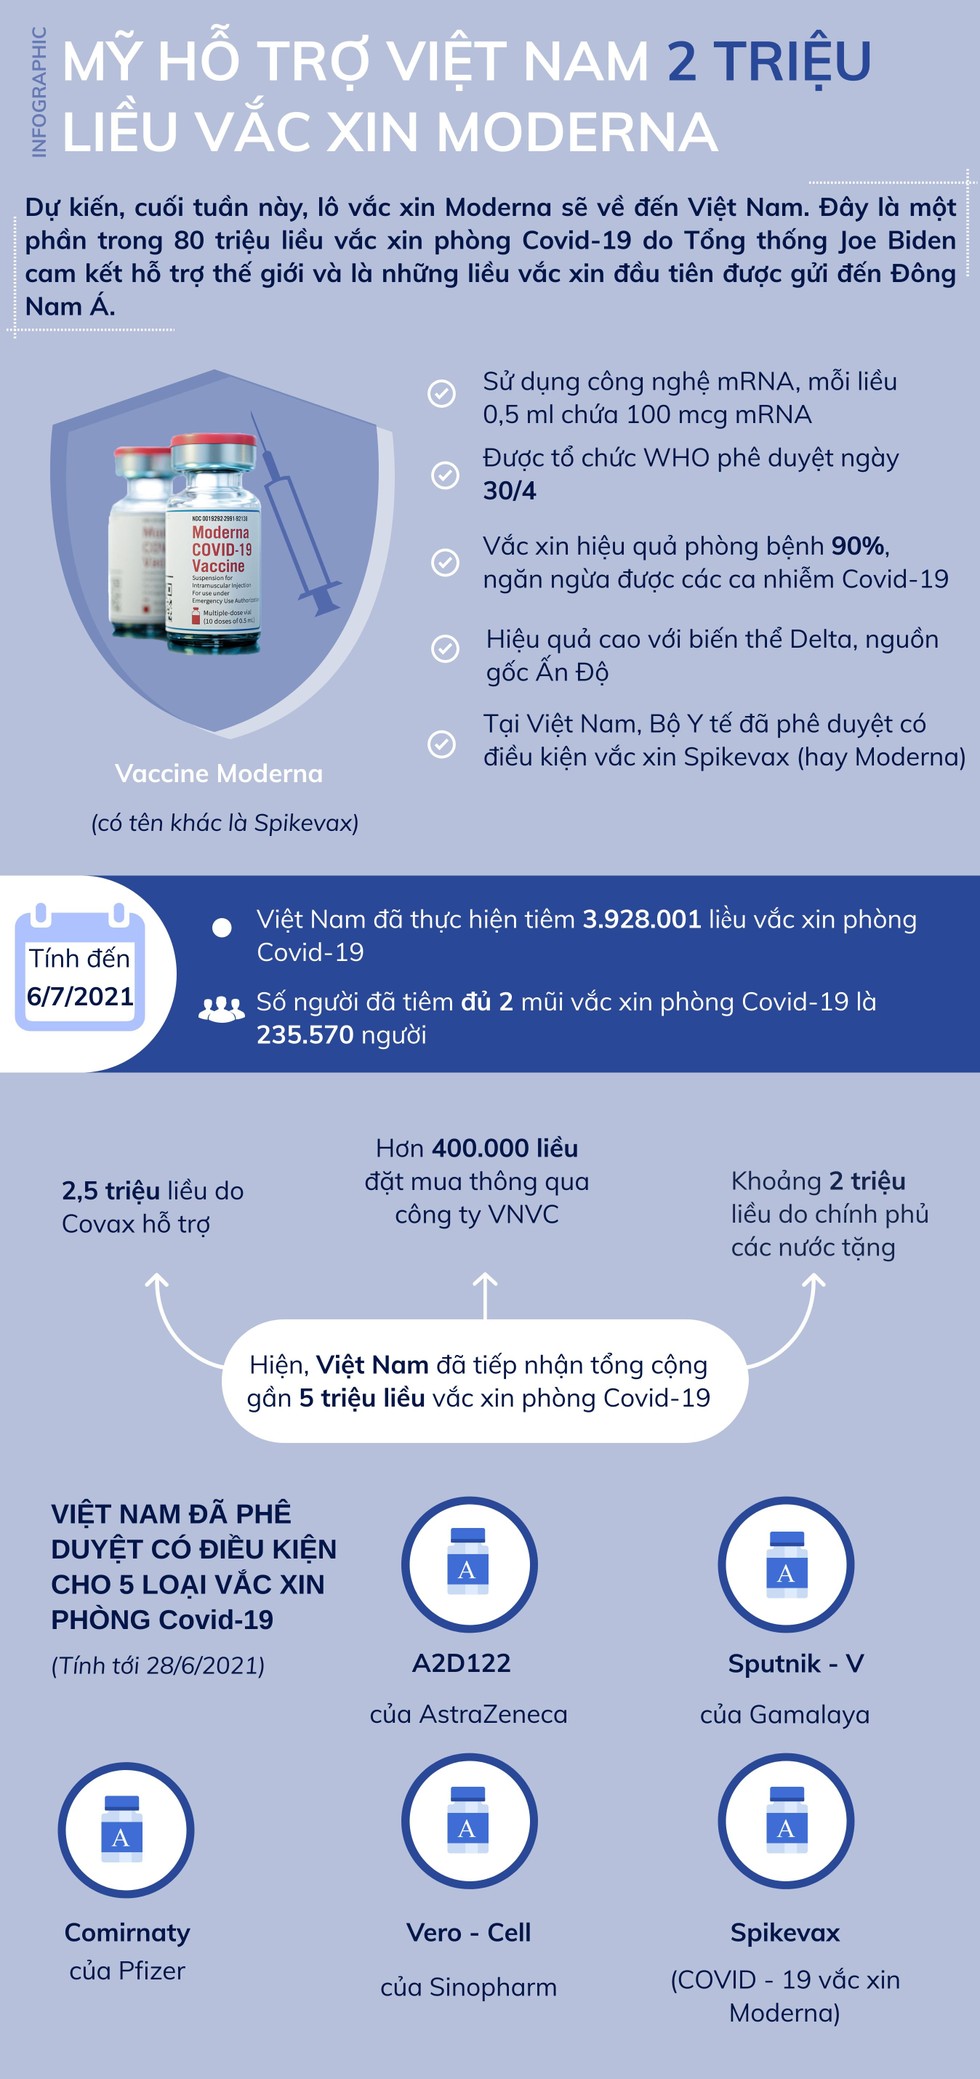 Infographic: 2 triệu liều vắc xin Moderna của Mỹ sắp về Việt Nam ảnh 1